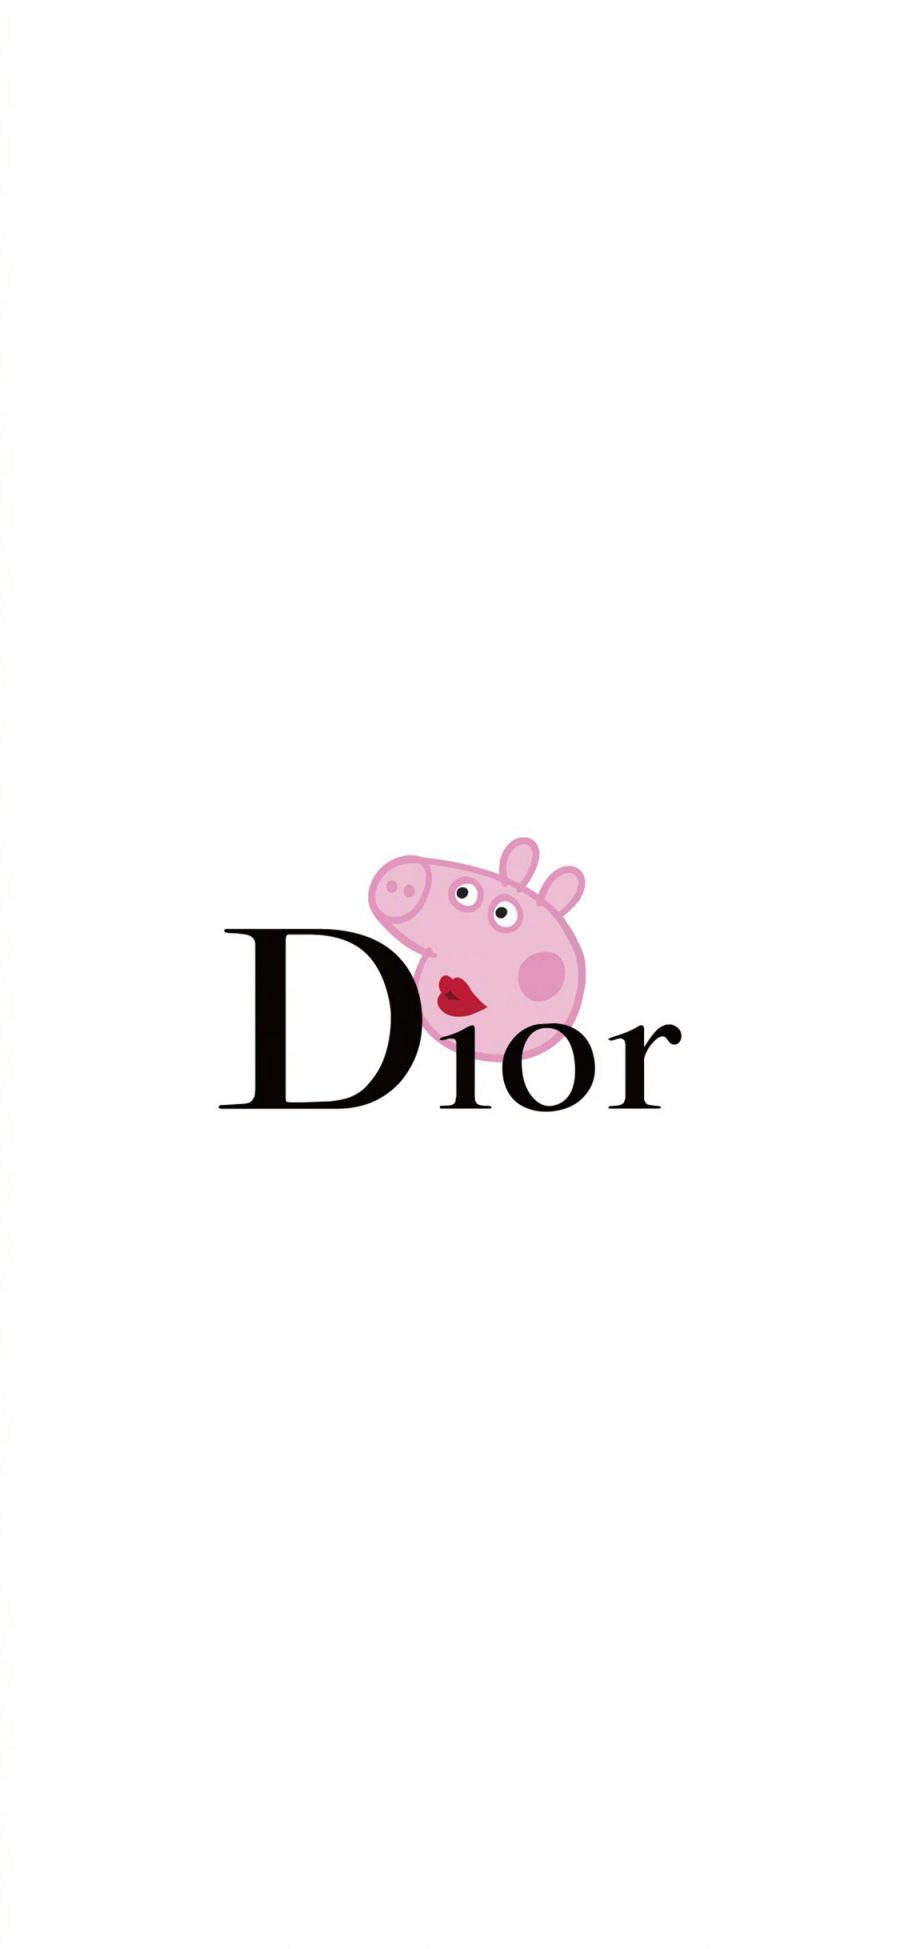 [2436×1125]Dior 品牌 小猪佩奇 双标 苹果手机动漫壁纸图片